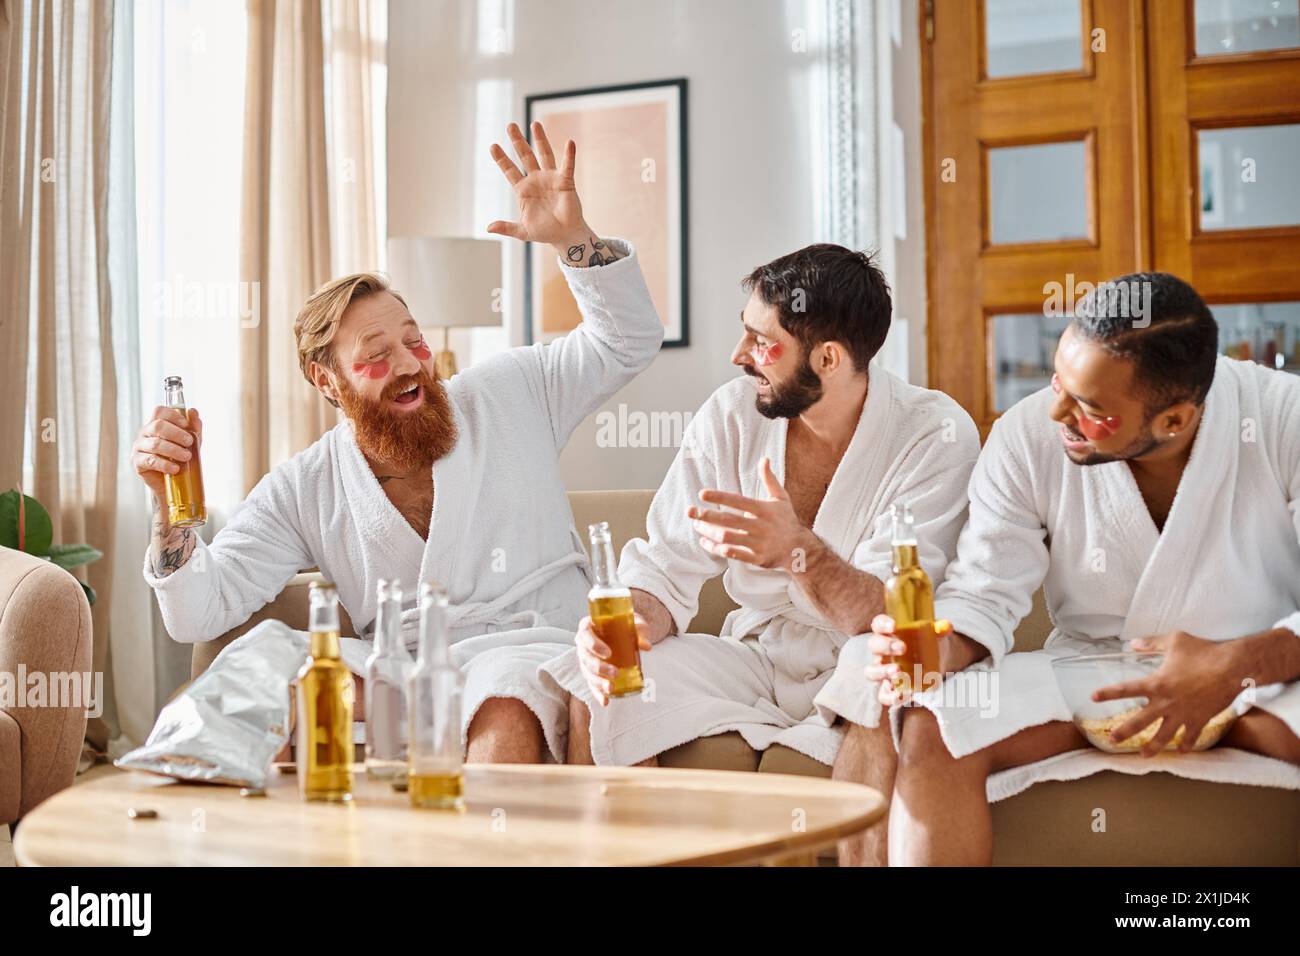 Drei verschiedene Männer in Bademänteln versammeln sich um einen Tisch und genießen sich bei einem gemeinsamen Drink. Stockfoto